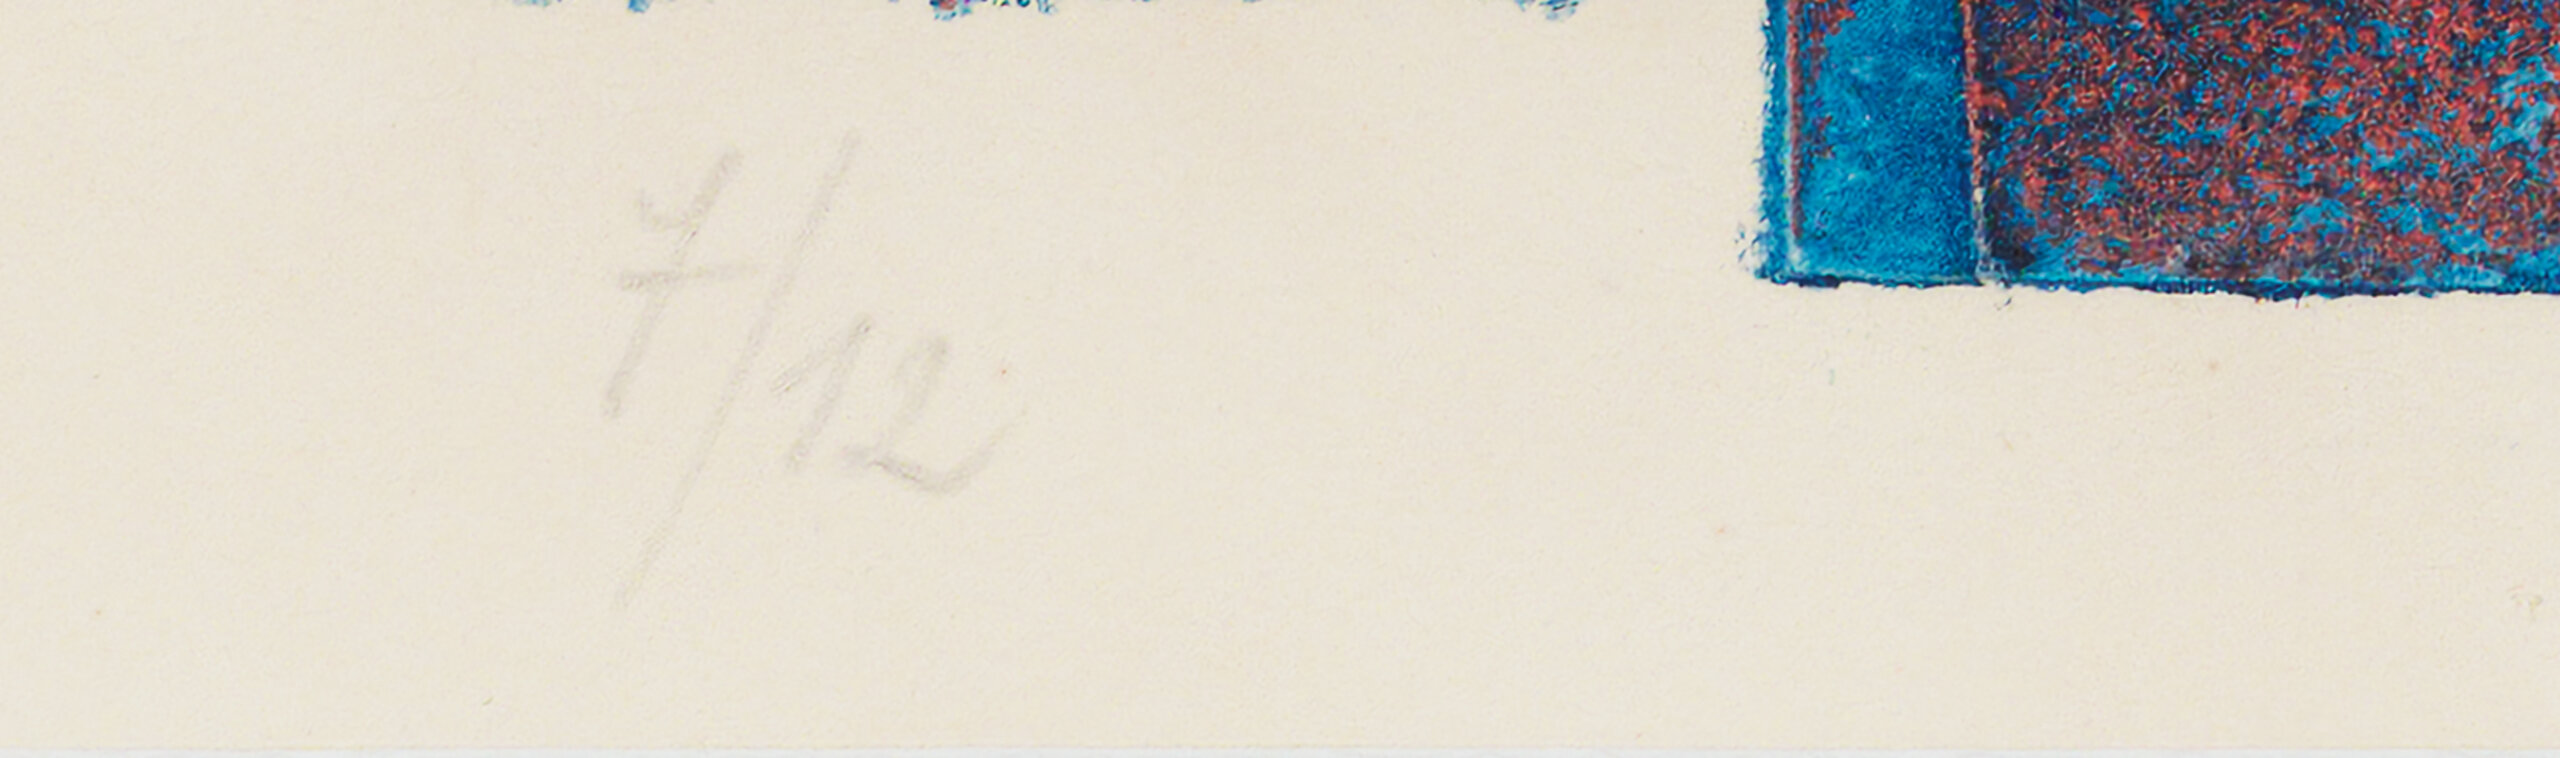 Avo Keerend “Kompositsioon sinisega”, 1968. 51 x 35 cm.